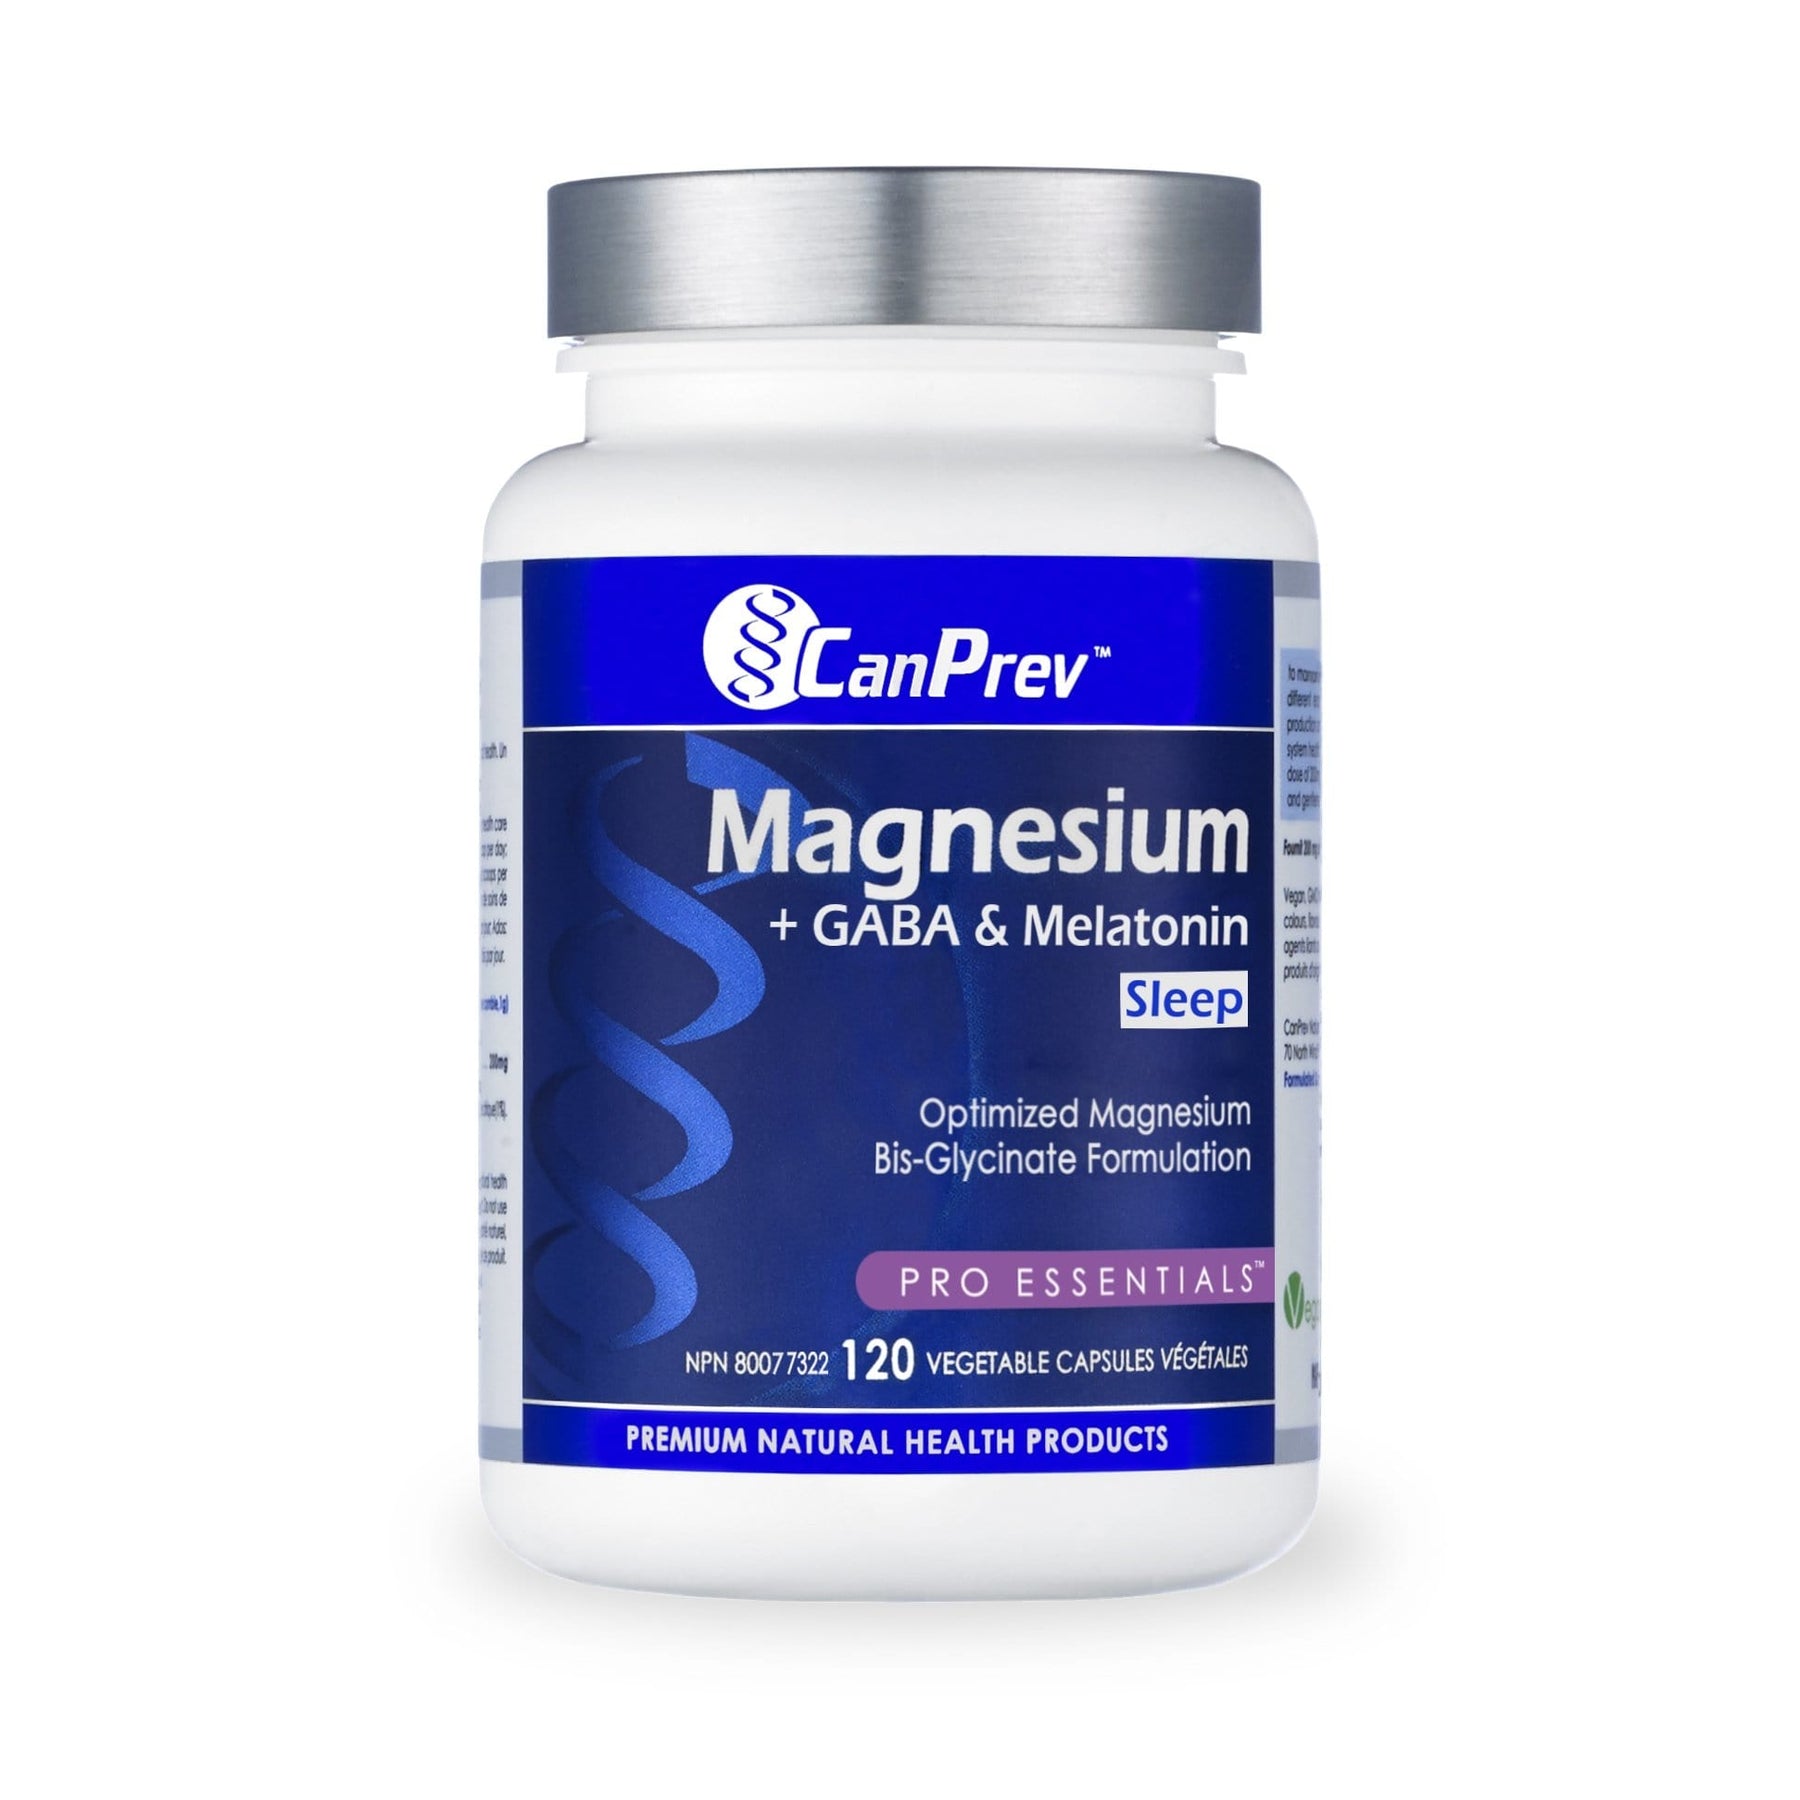 CanPrev Magnesium + GABA & Melatonin for Sleep - Default Title - by CanPrev |ProCare Outlet|